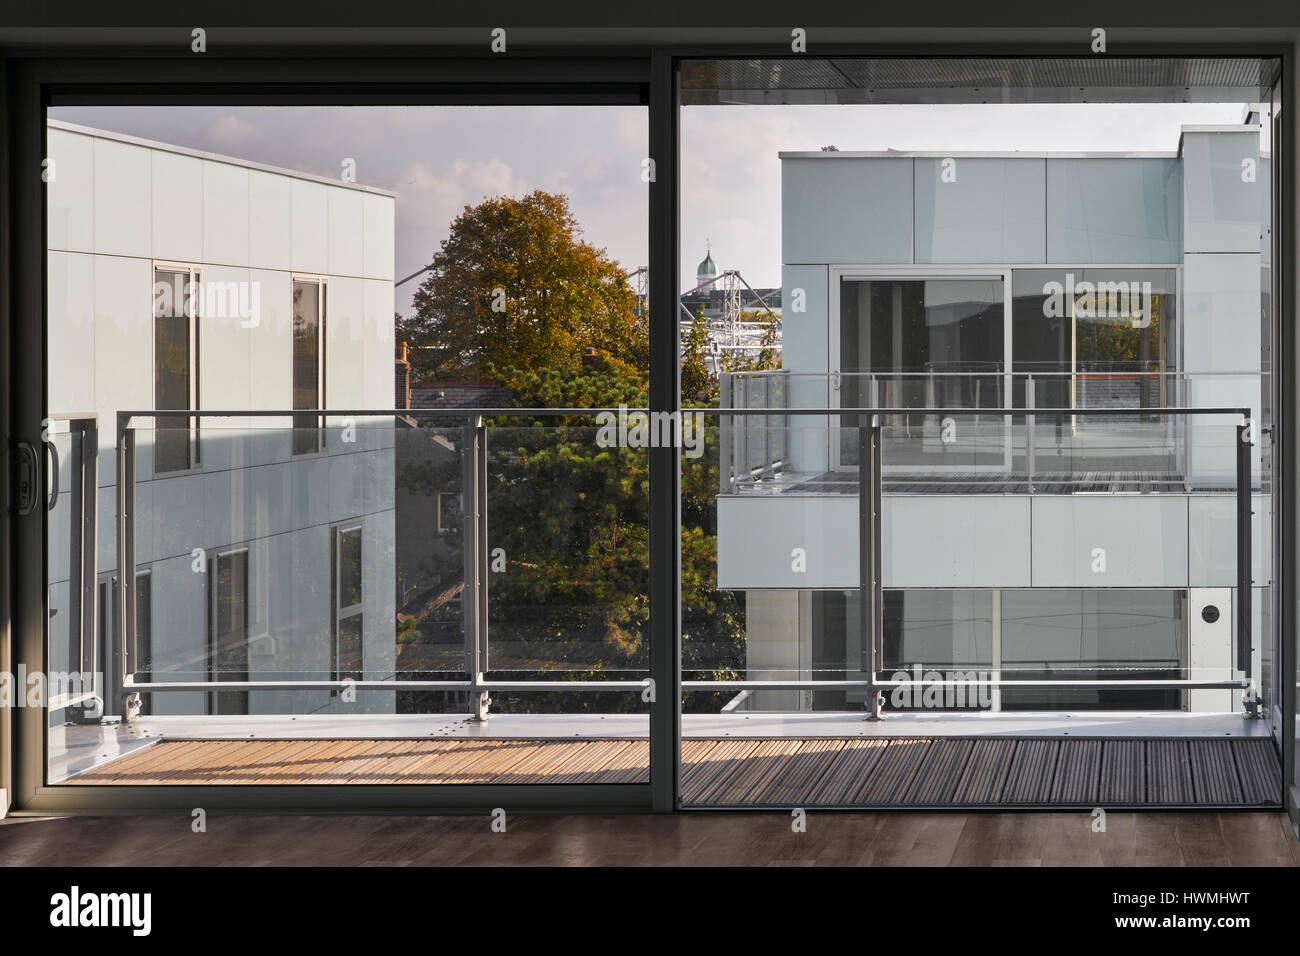 Vue de l'intérieur de l'appartement du troisième étage montrant de portes coulissantes en verre à l'extérieur. Appartements de Dunluce, Ballsbridge, Irlande. Architecte : Derek Tynan Archi Banque D'Images